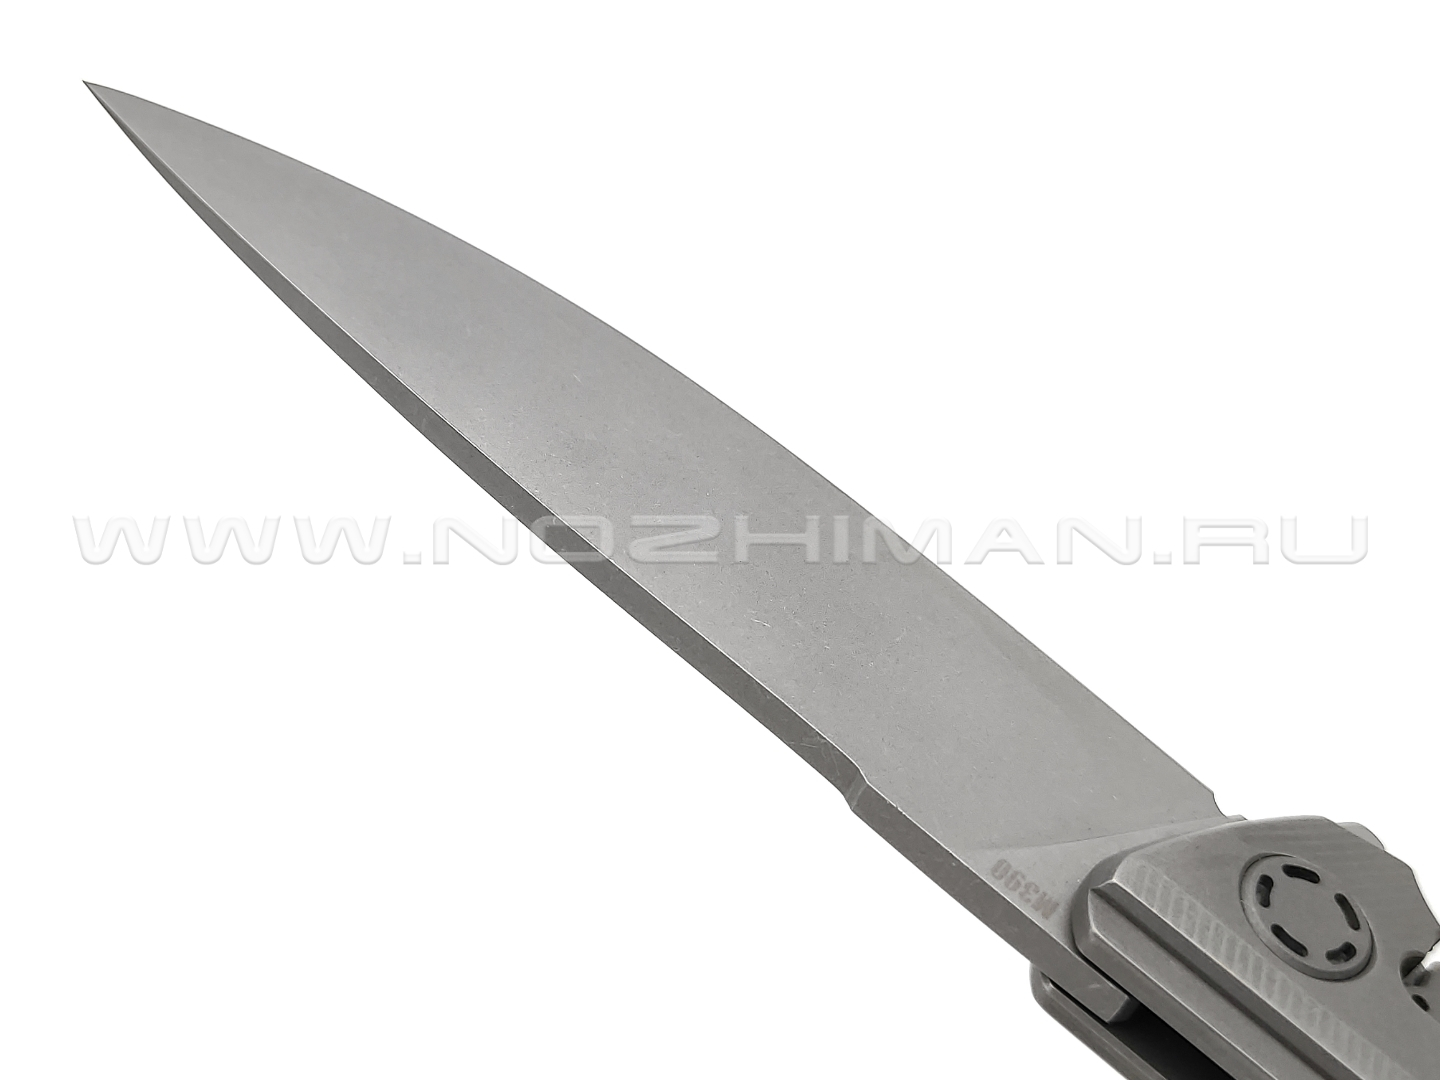 Neyris Knives складной нож Коут сталь M390, рукоять титан, carbon fiber arctic storm